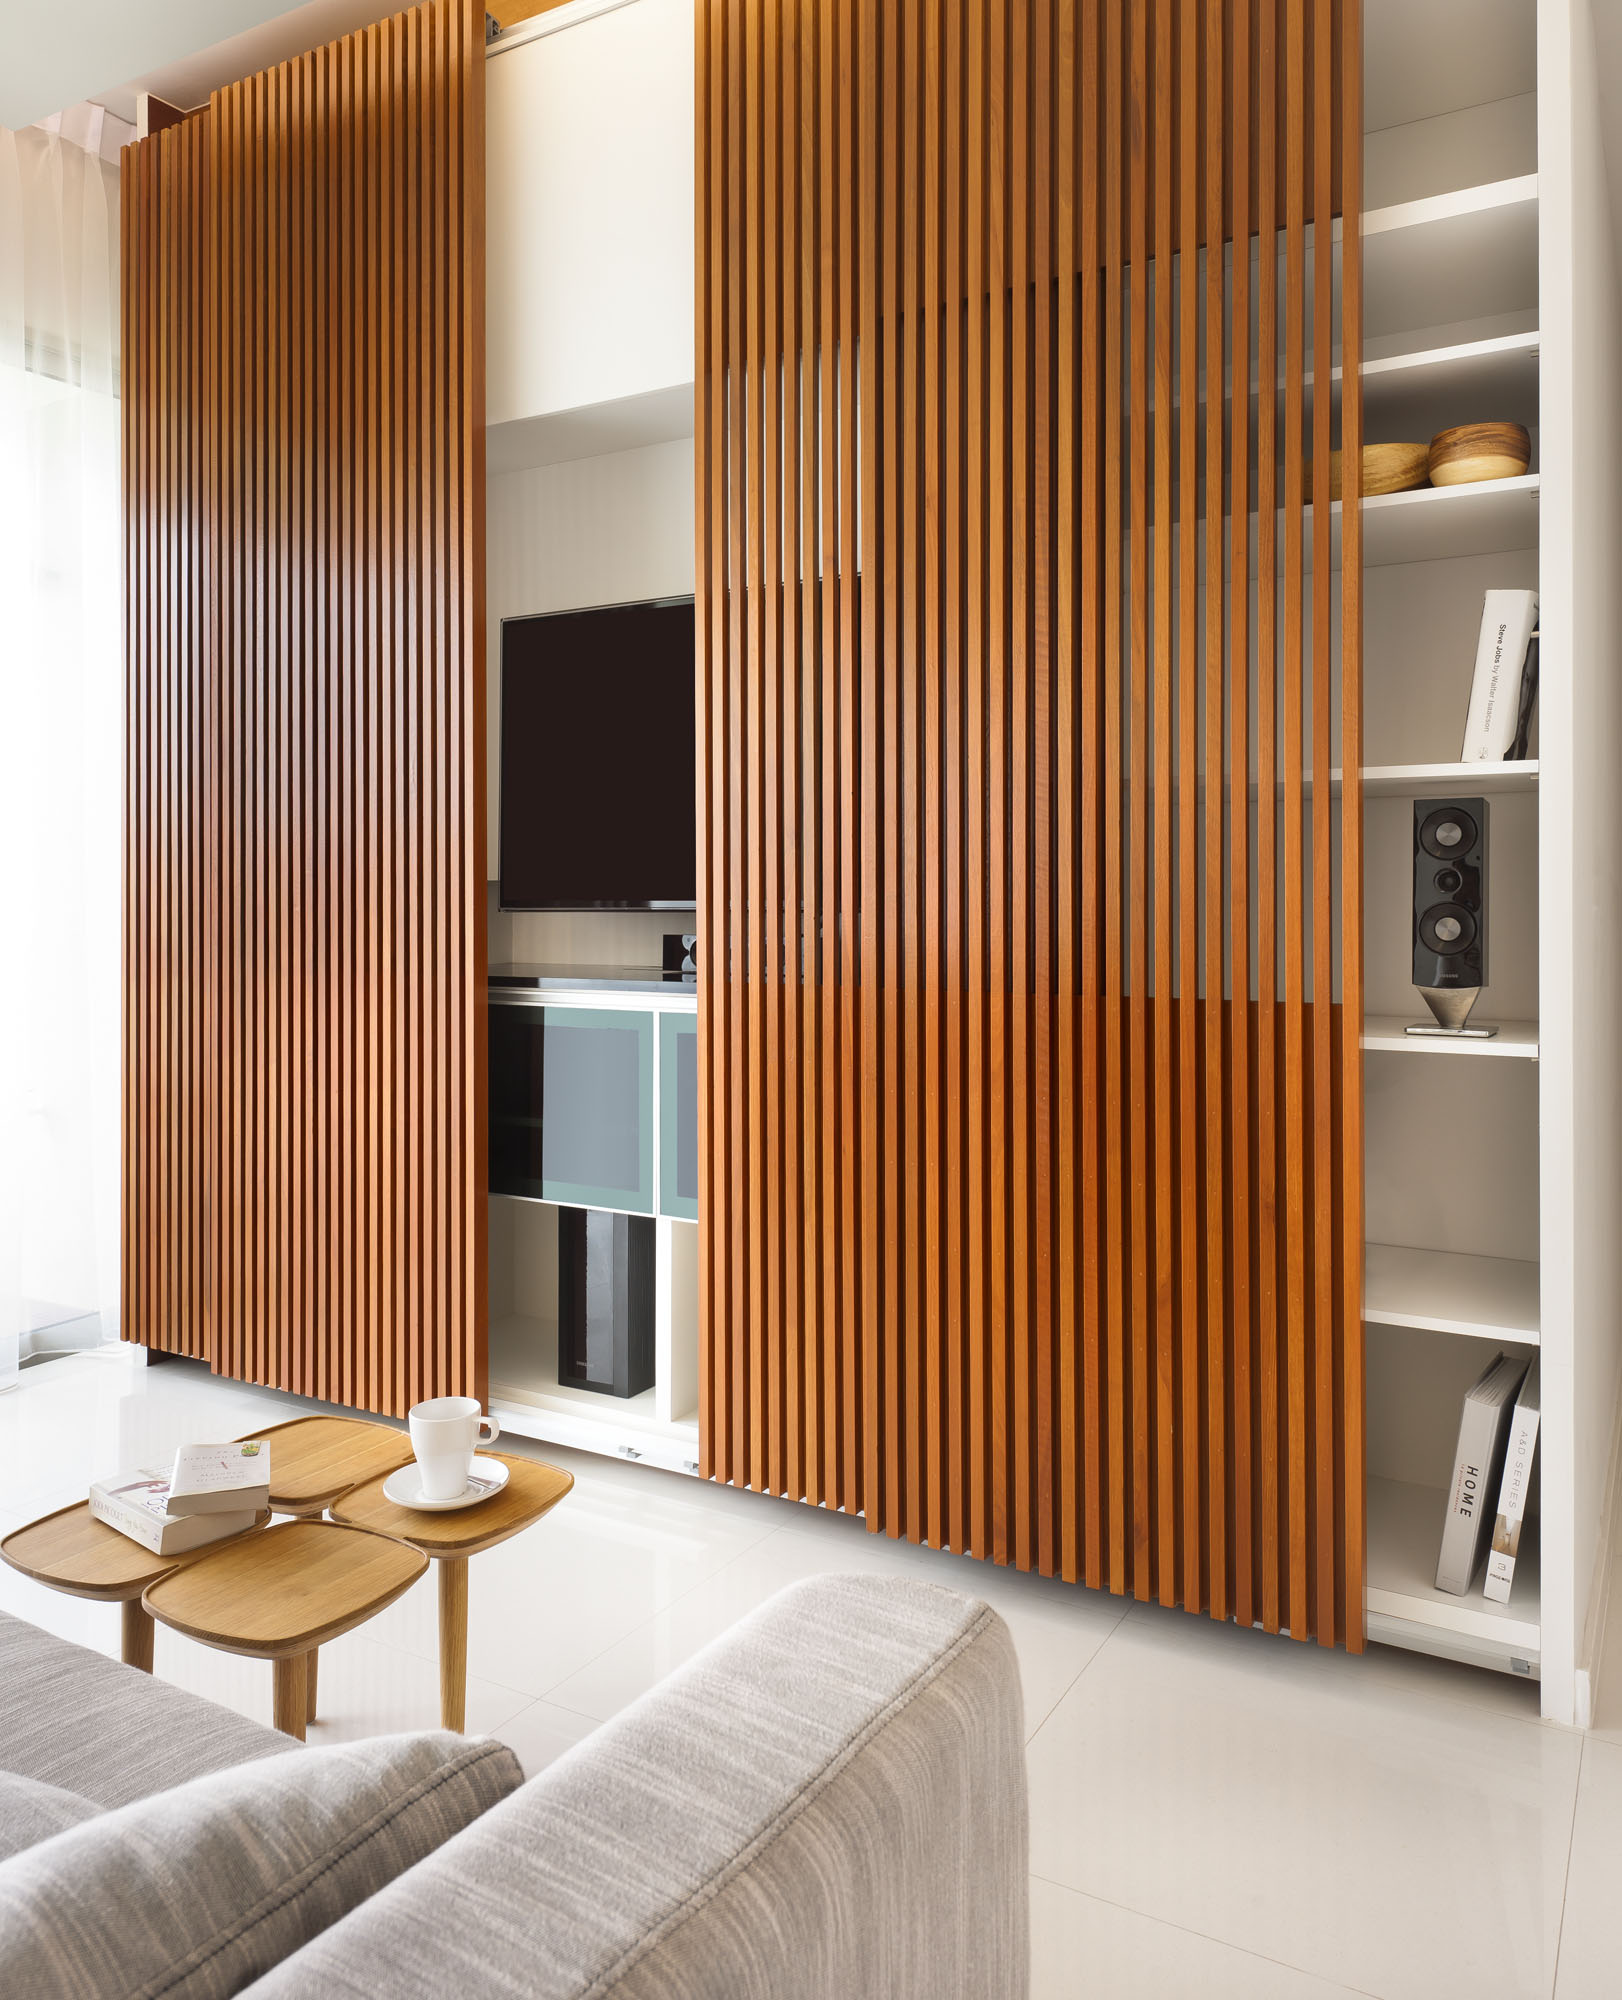 Wedo thiết kế nội thất nhà đẹp, mát mẻ và sang trọng với gỗ tự nhiên